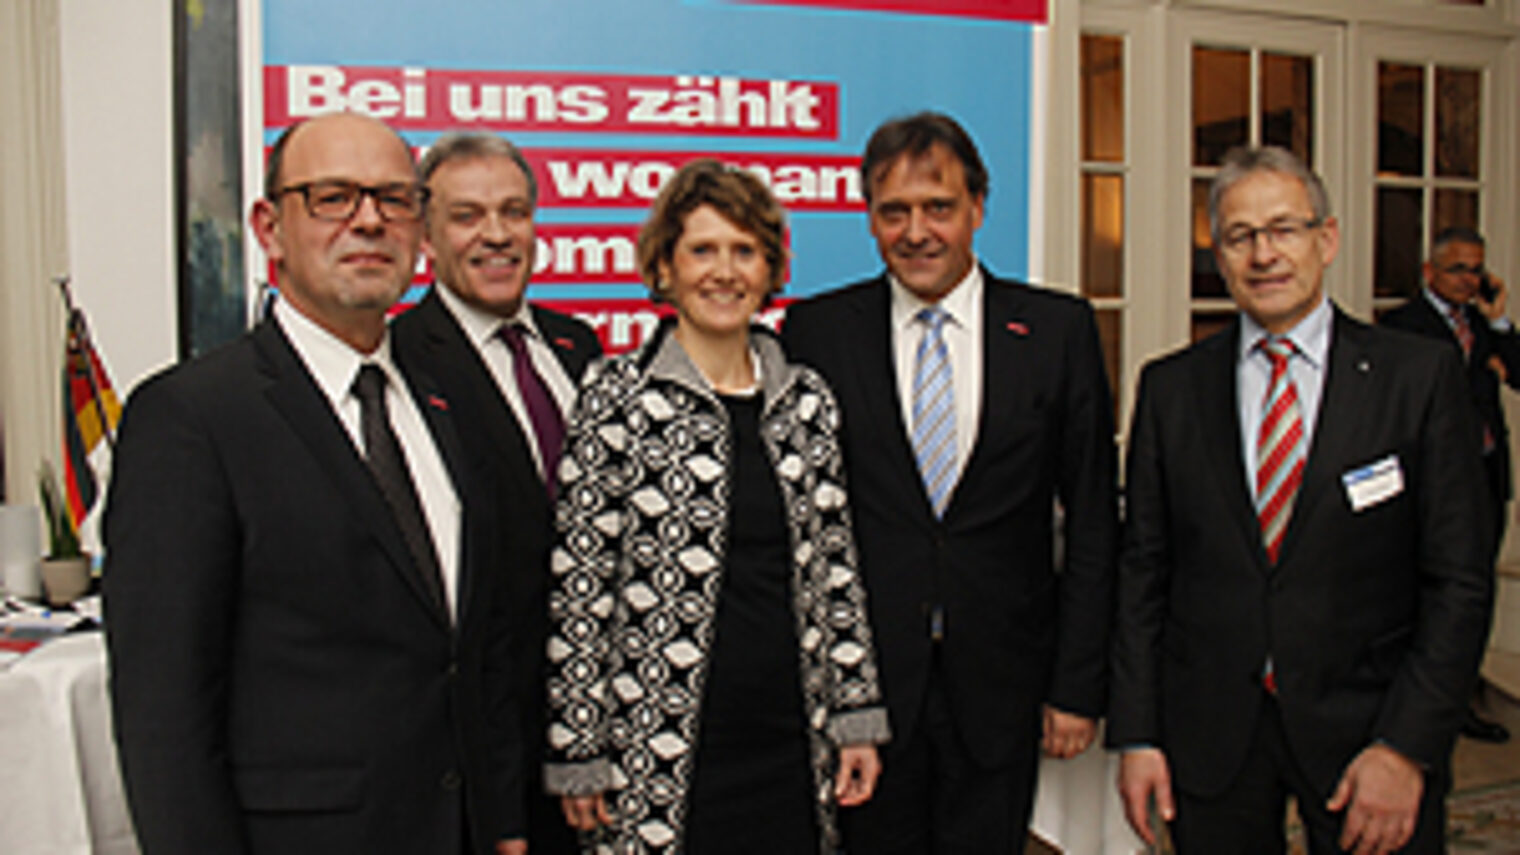 Präsident Hans-Jörg Friese (HWK Rheinhessen), Präsident Kurt Krautscheid (HWK Koblenz), Ministerin Eveline Lemke, Hauptgeschäftsführer Ralf Hellrich (HWK der Pfalz), Präsident Rudi Müller (HWK Trier) (vlnr)